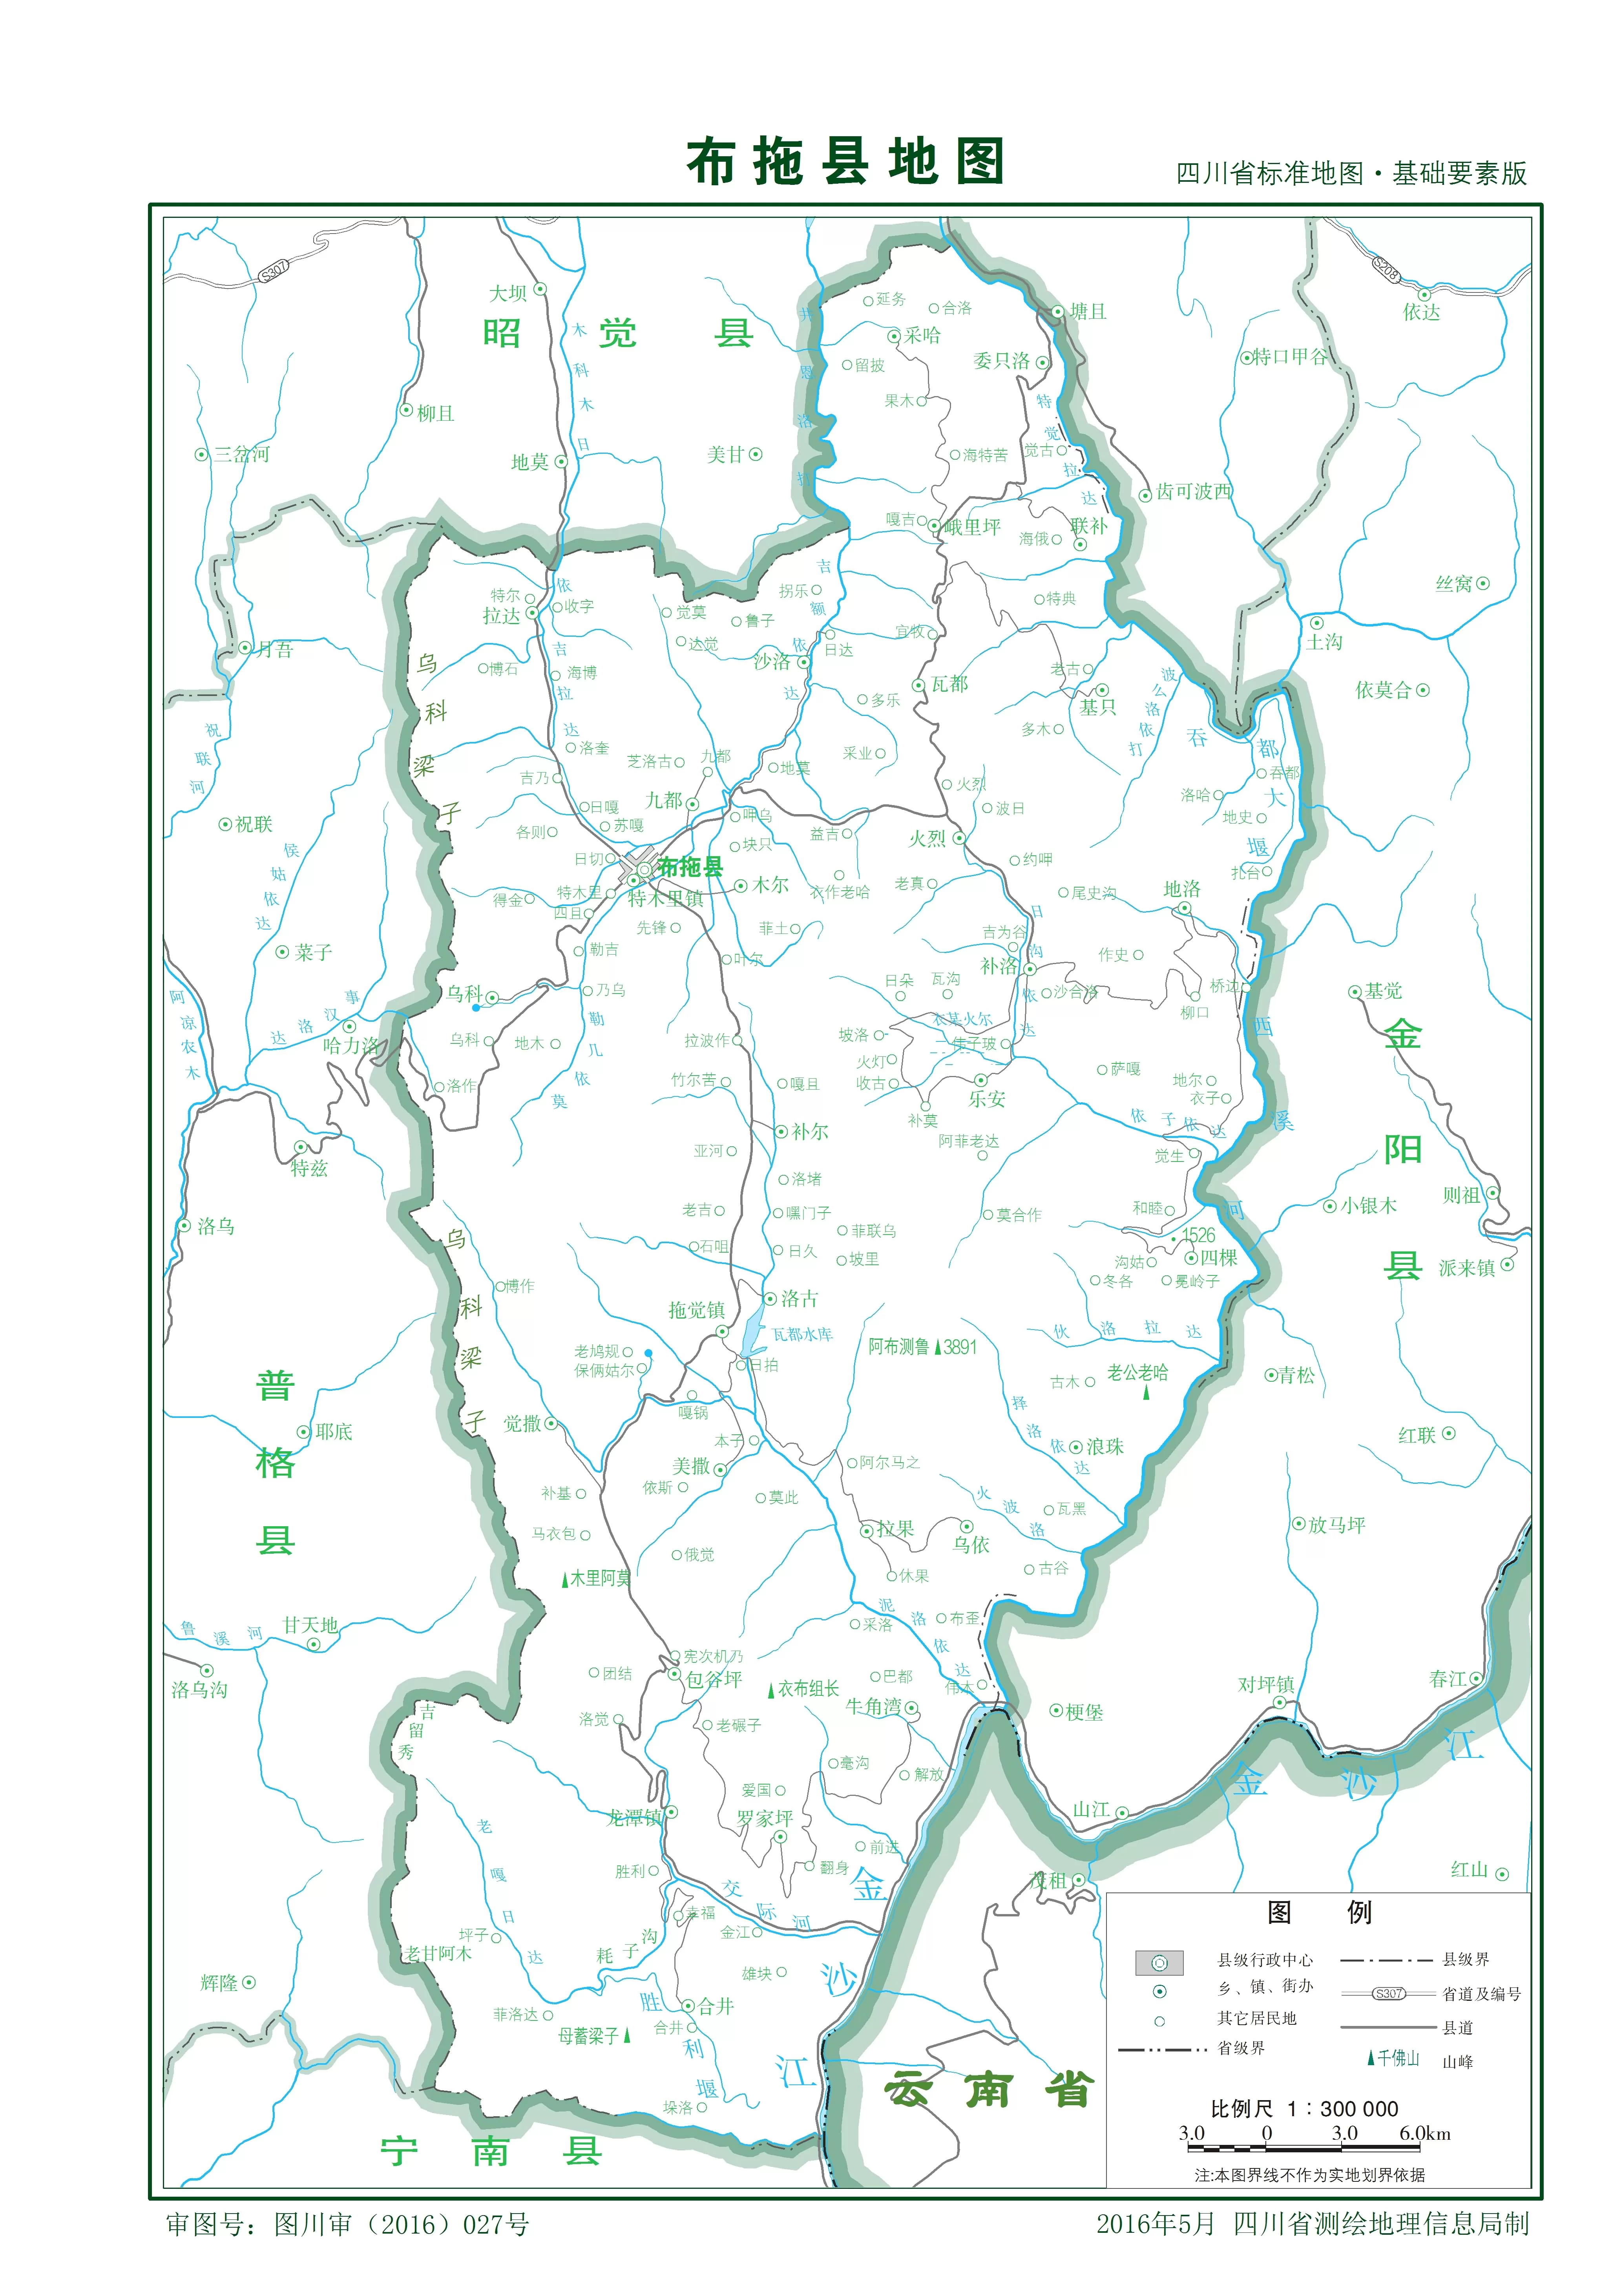 布拖县地图|布拖县地图全图高清版大图片|旅途风景图片网|www.visacits.com